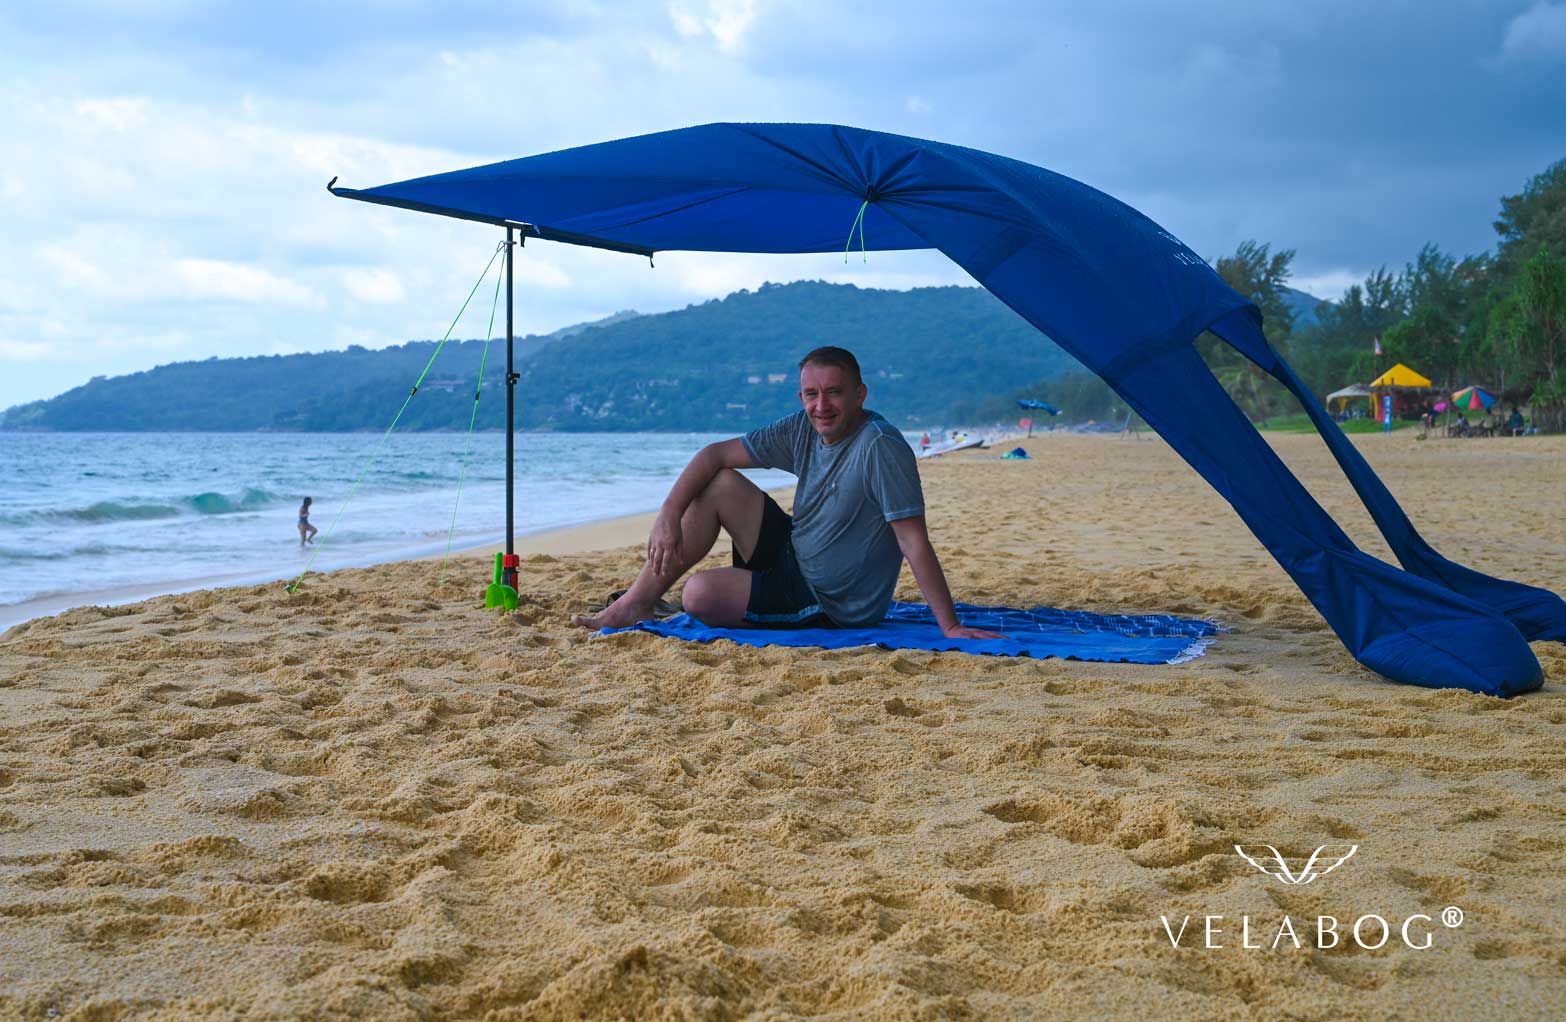 Velabog «Breeze» żagiel słoneczny - ciemnoniebieski. Najlepsza ochrona przeciwsłoneczna na plaży w Tajlandii nawet podczas deszczu. Może być ustawiony przy lekkim lub silnym wietrze. Widok z boku. Osoby.